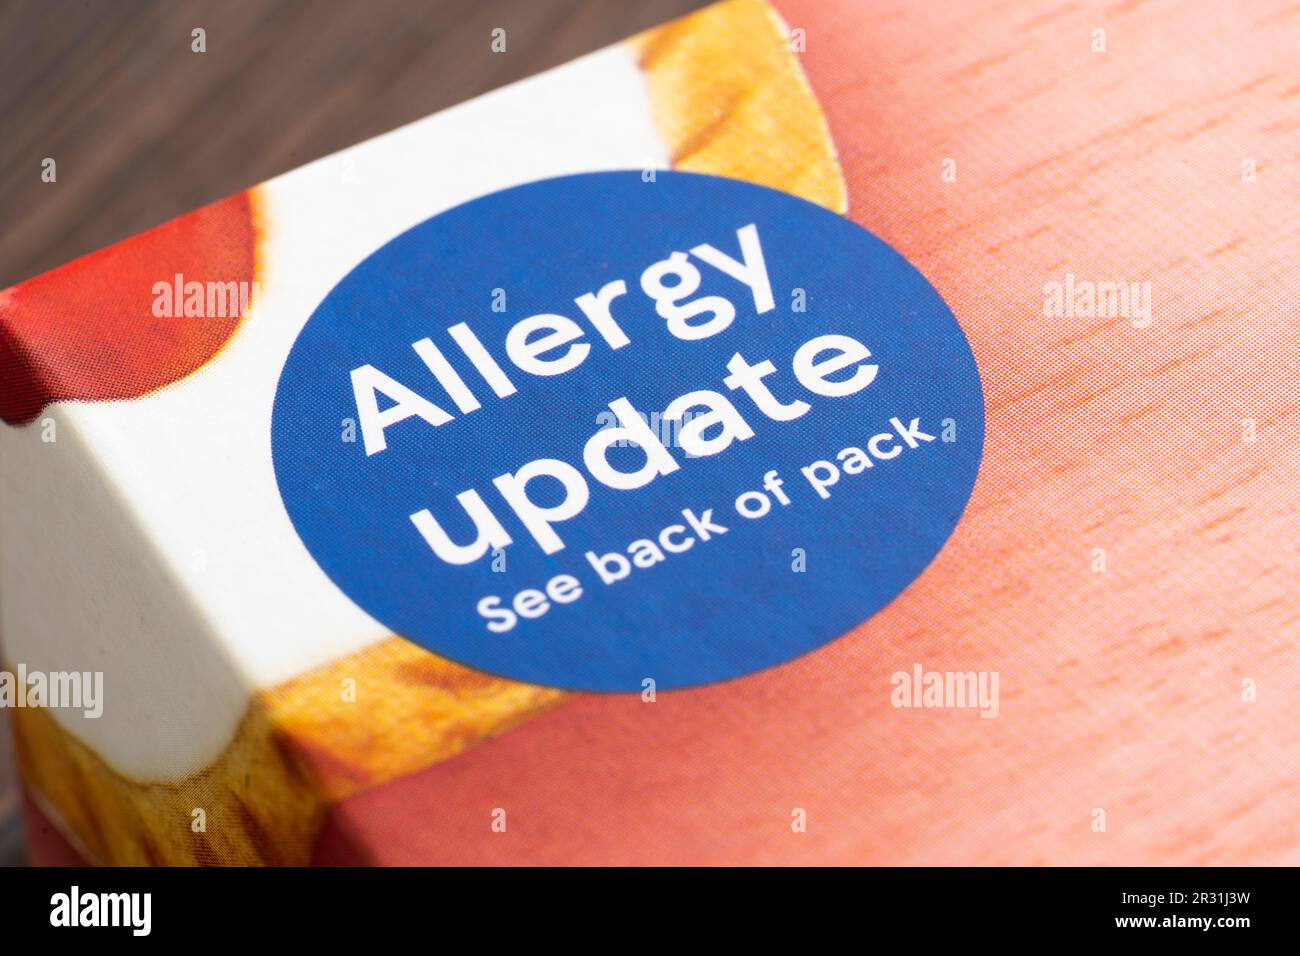 Etichetta di aggiornamento allergia sul pacchetto di crostate in ciliegio del marchio Tesco, Inghilterra. Concetto: Allergie alimentari, allergia che causa gli alimenti, reazione allergica Foto Stock